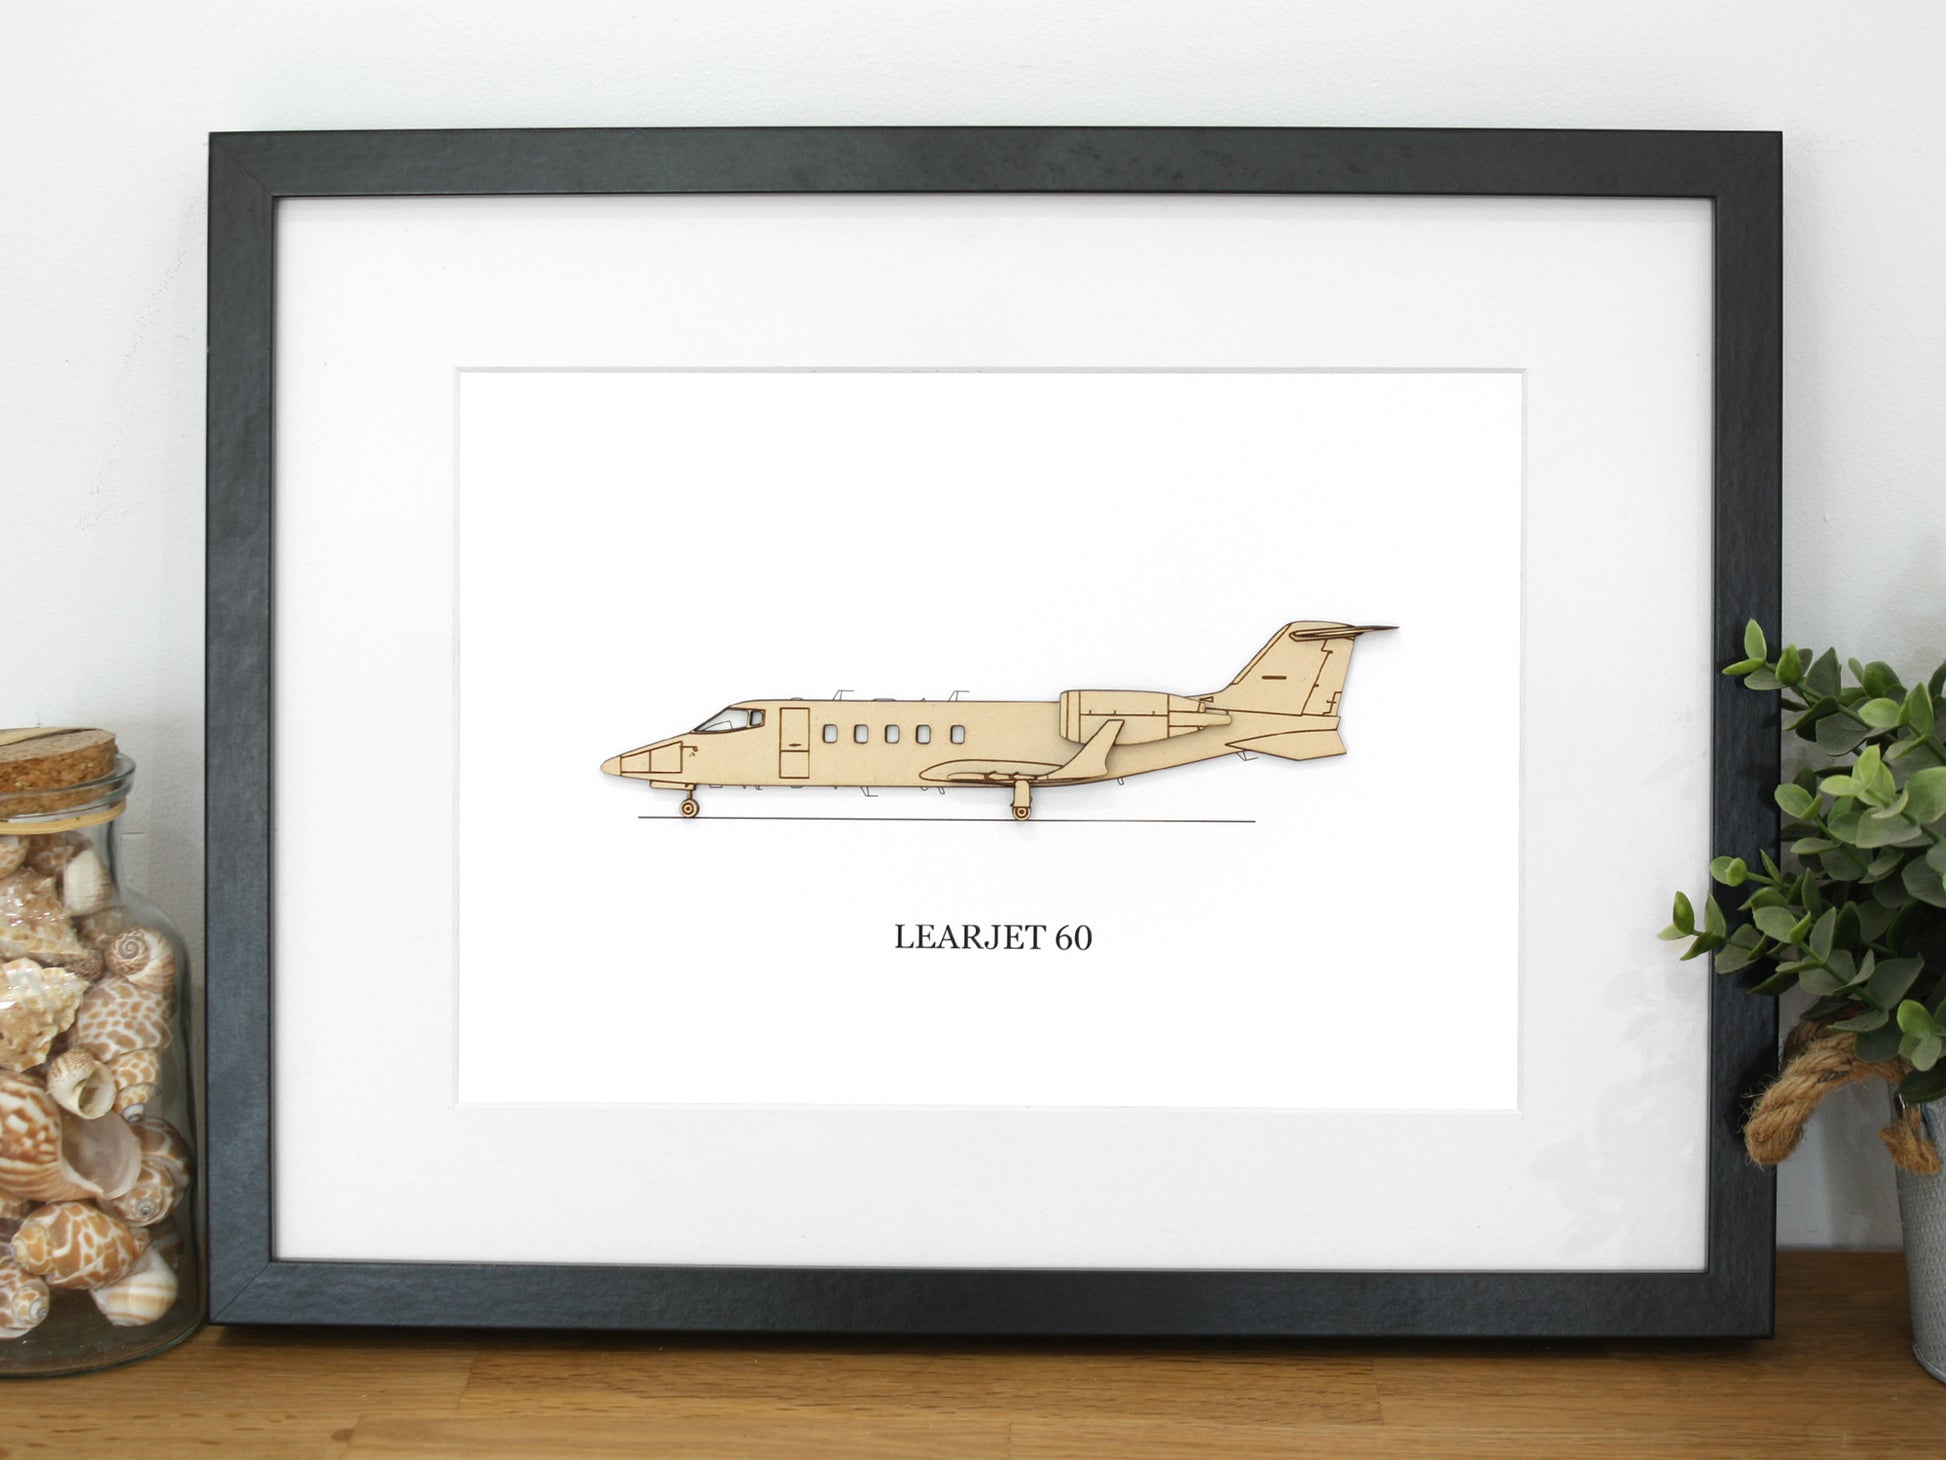 Learjet 60 aviation gifts